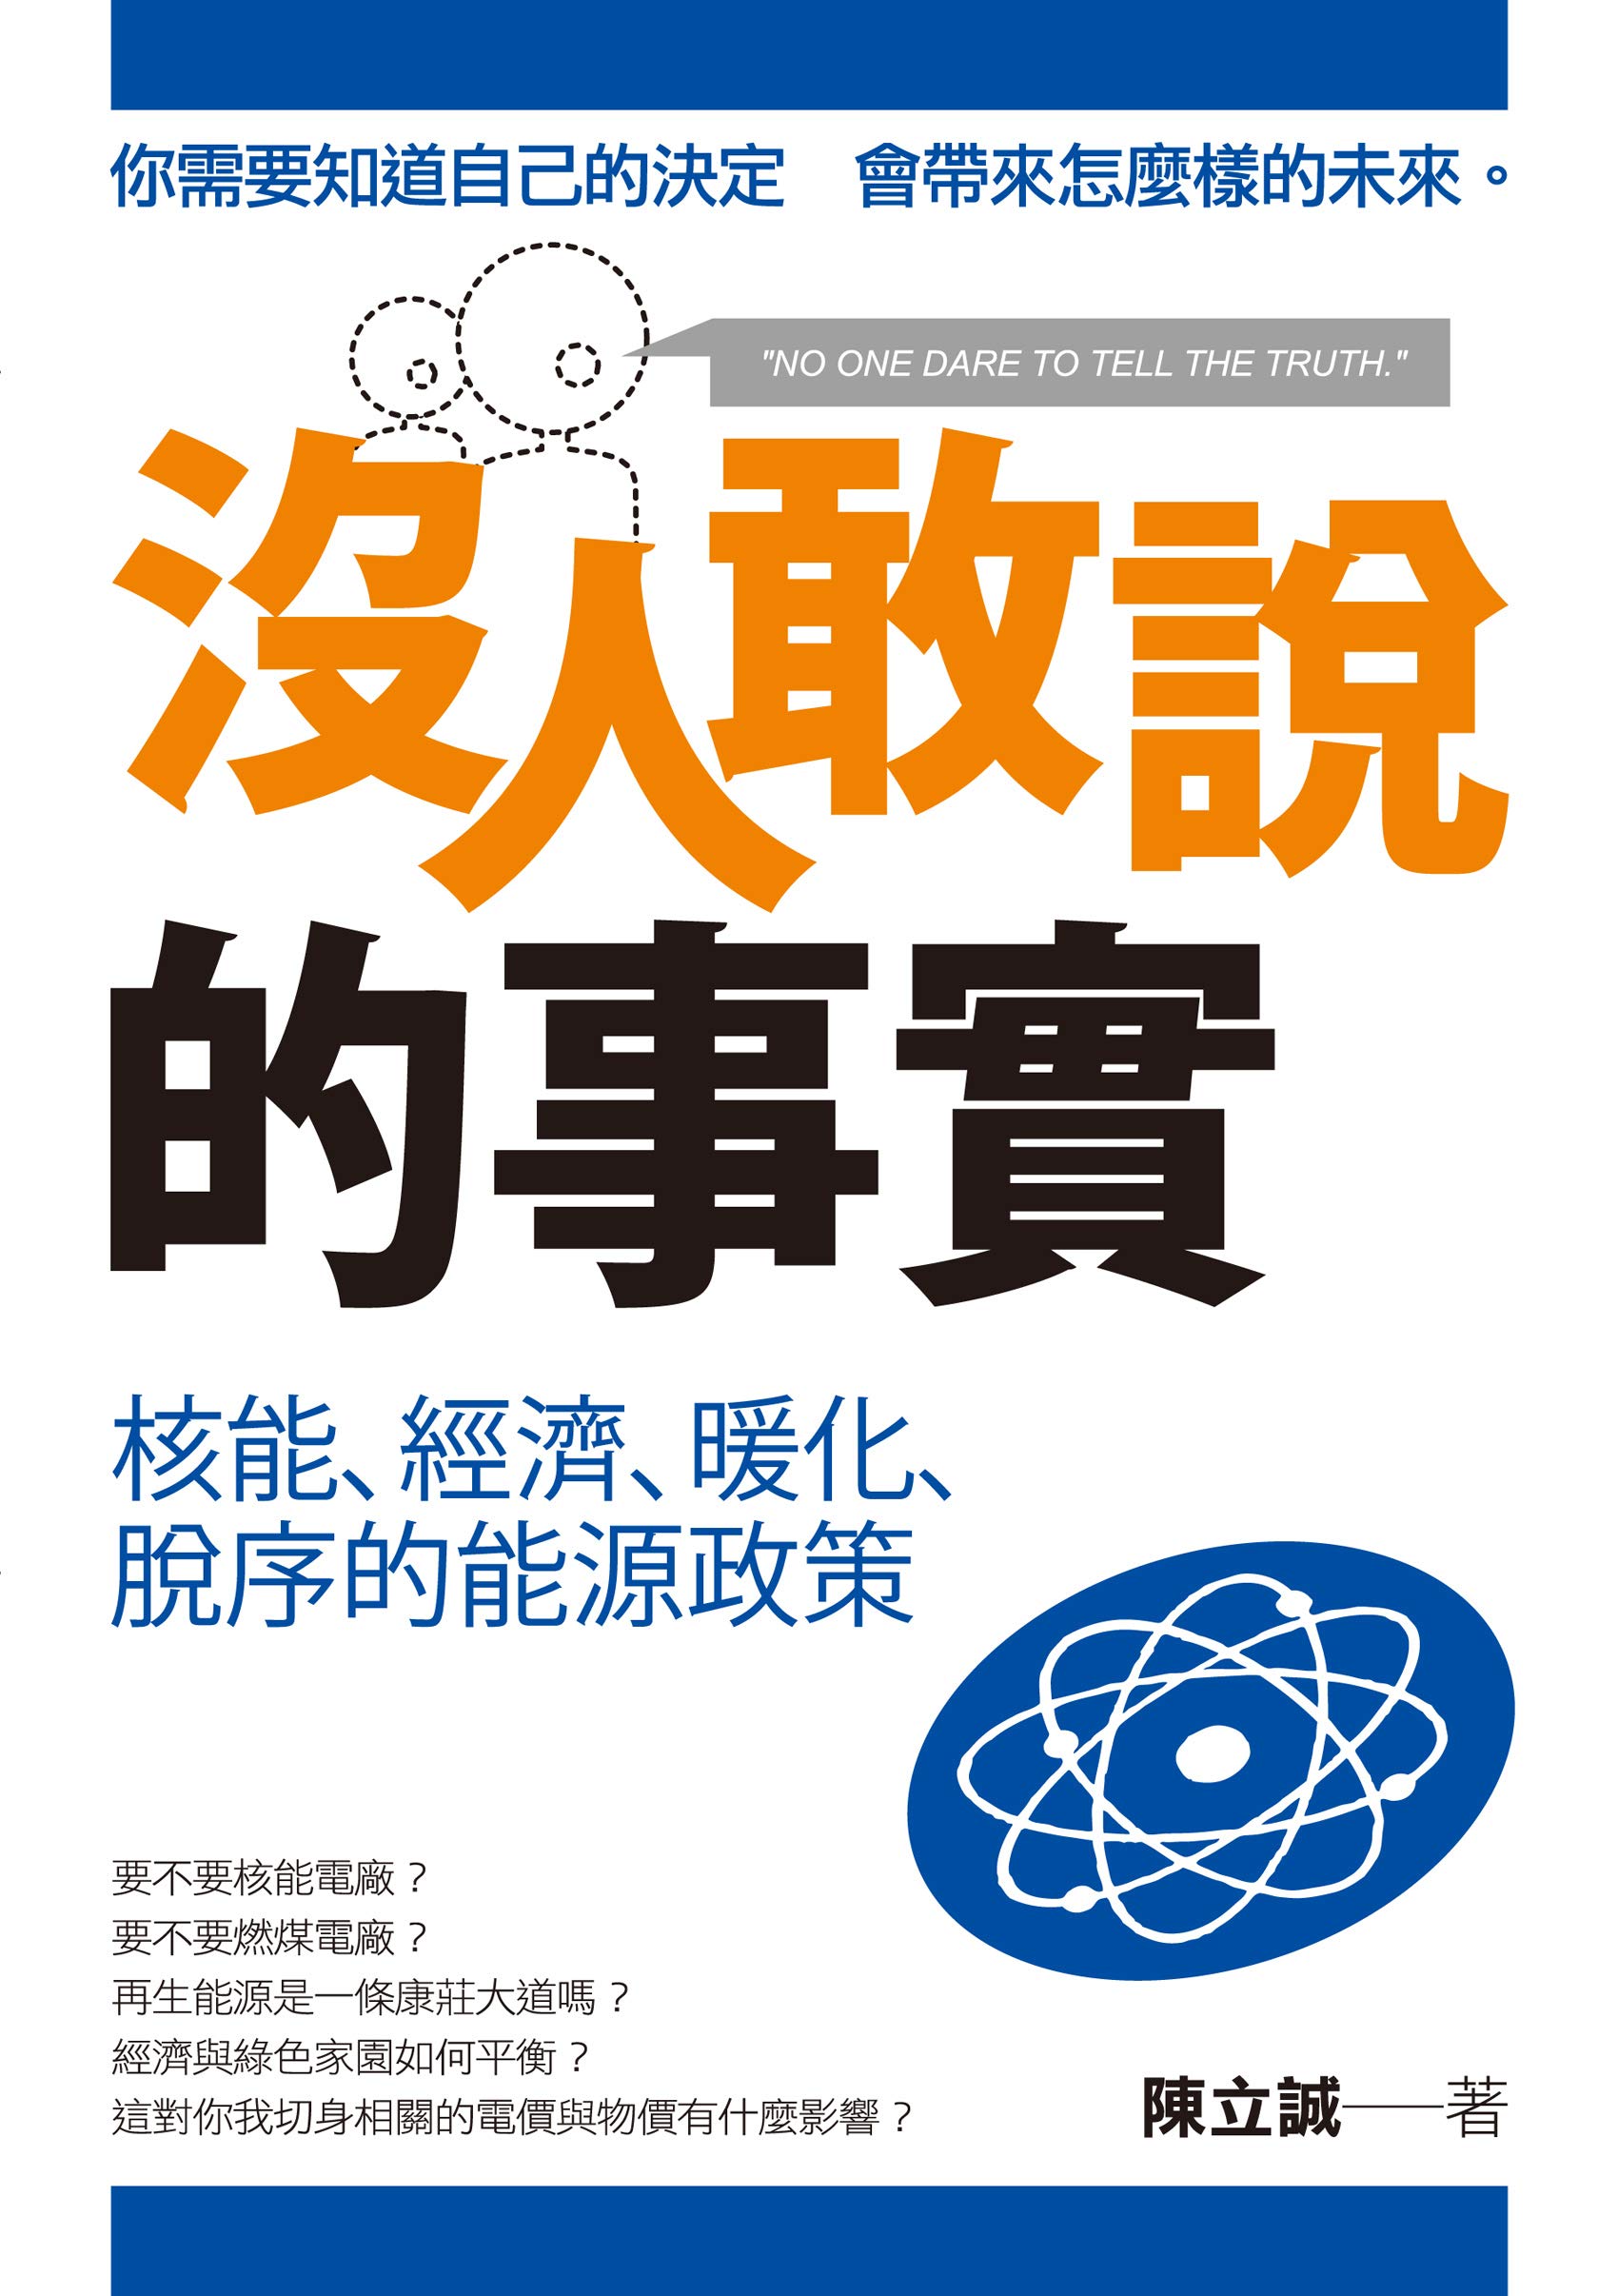 沒人敢說的事實—核能、經濟、暖化、脫序的能源政策 (Traditional Chinese Edition)